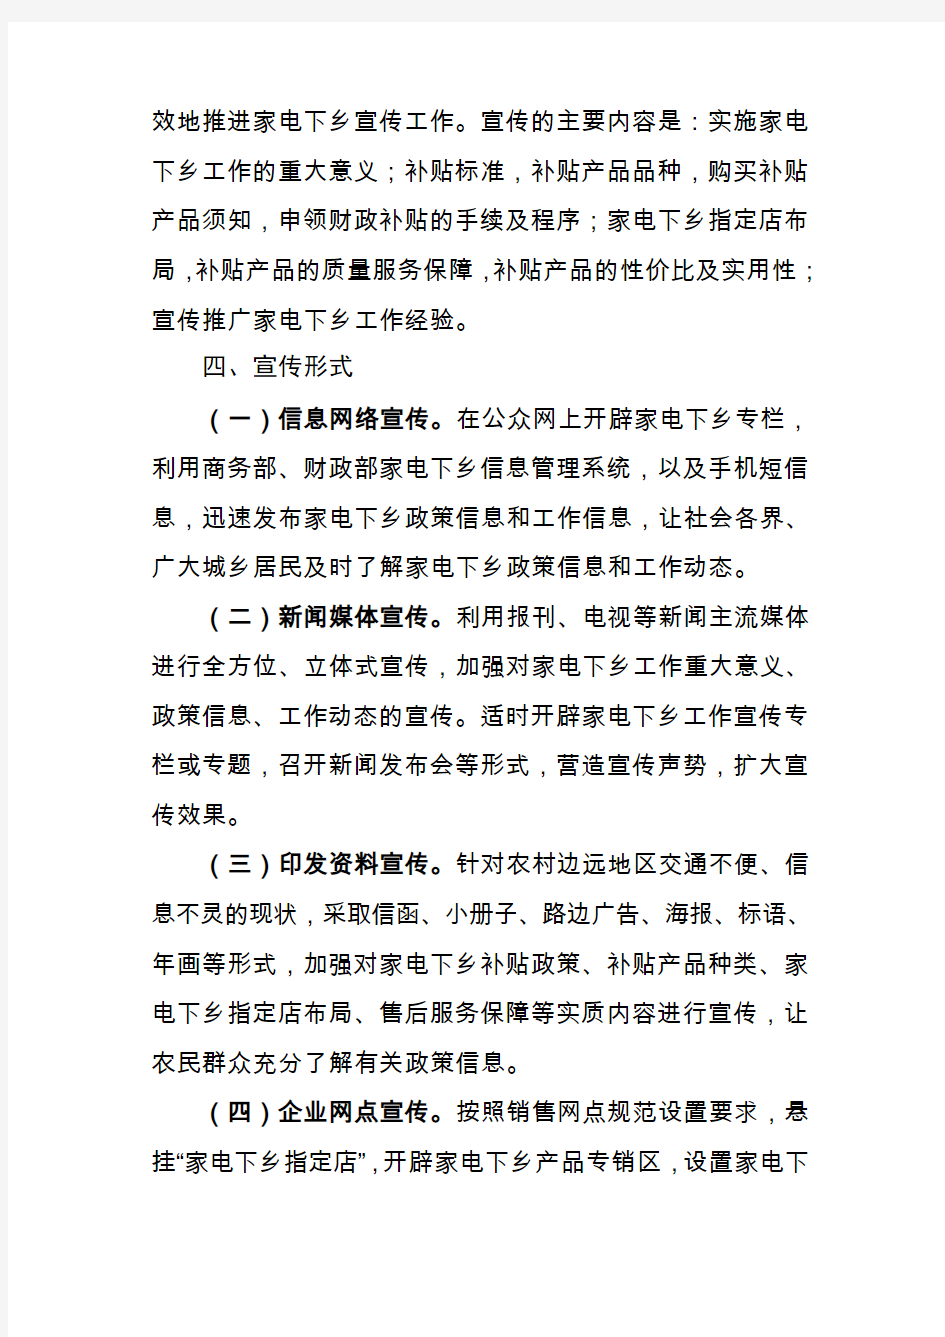 重庆市家电下乡工作宣传方案计划